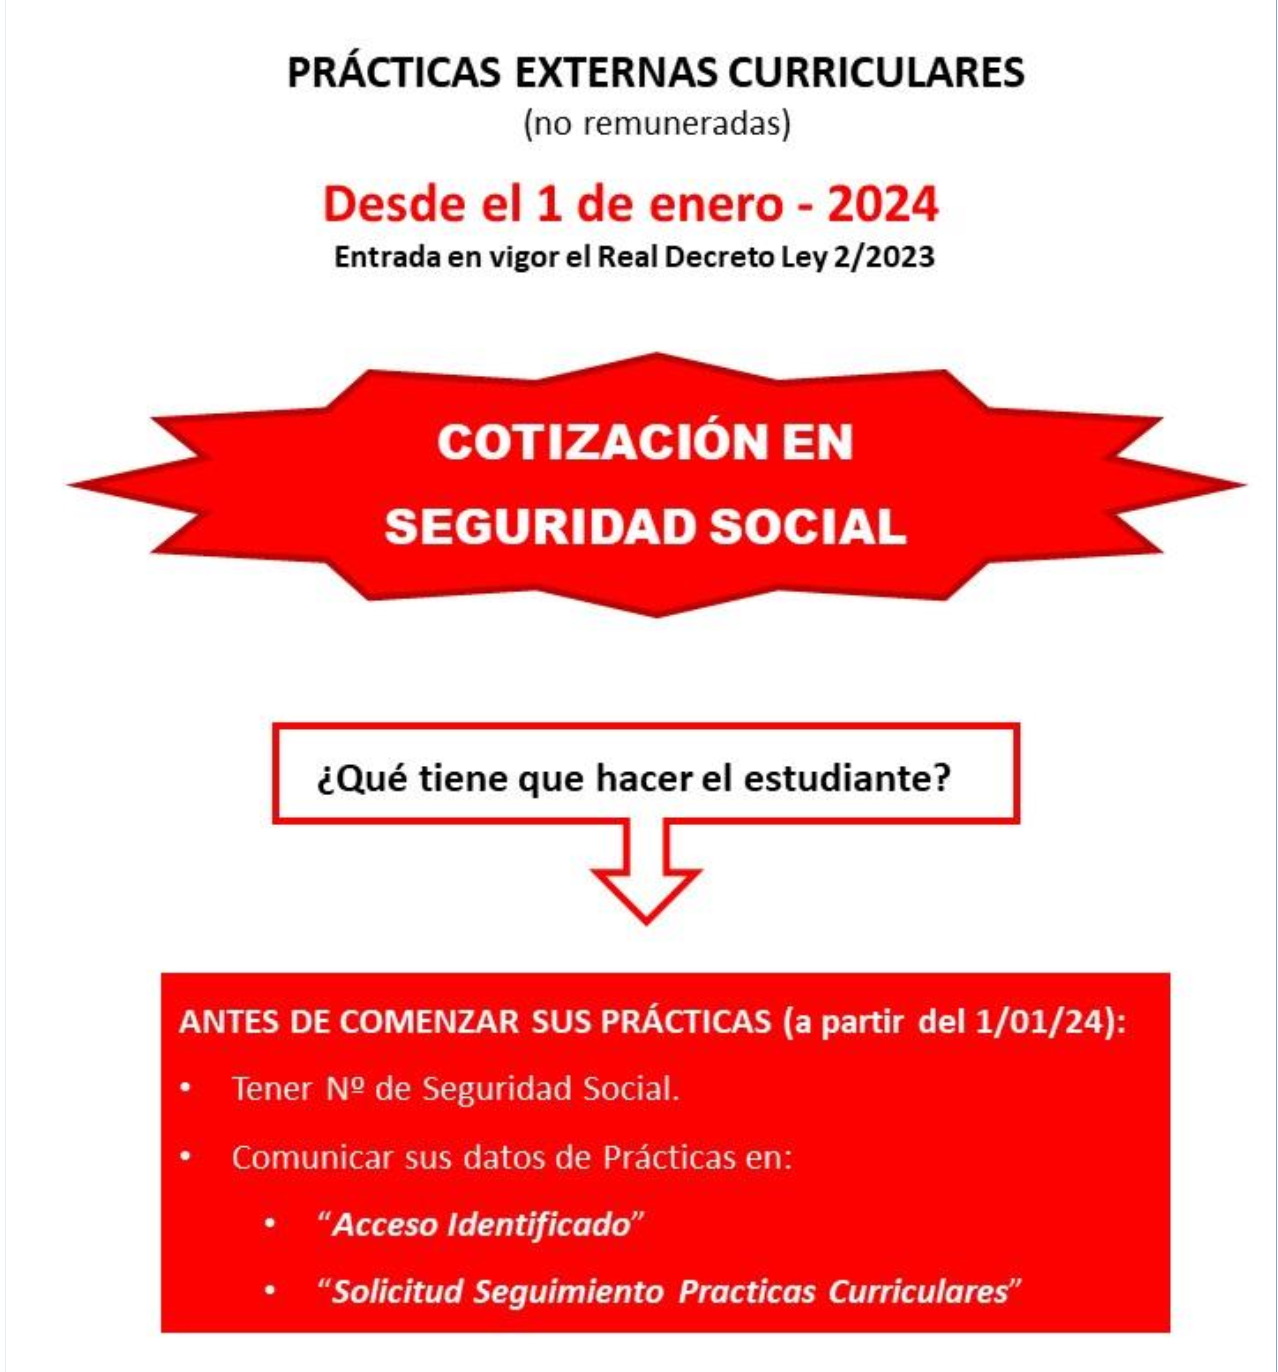 Manual sobre la cotización a la Seguridad Social de las prácticas externas curriculares